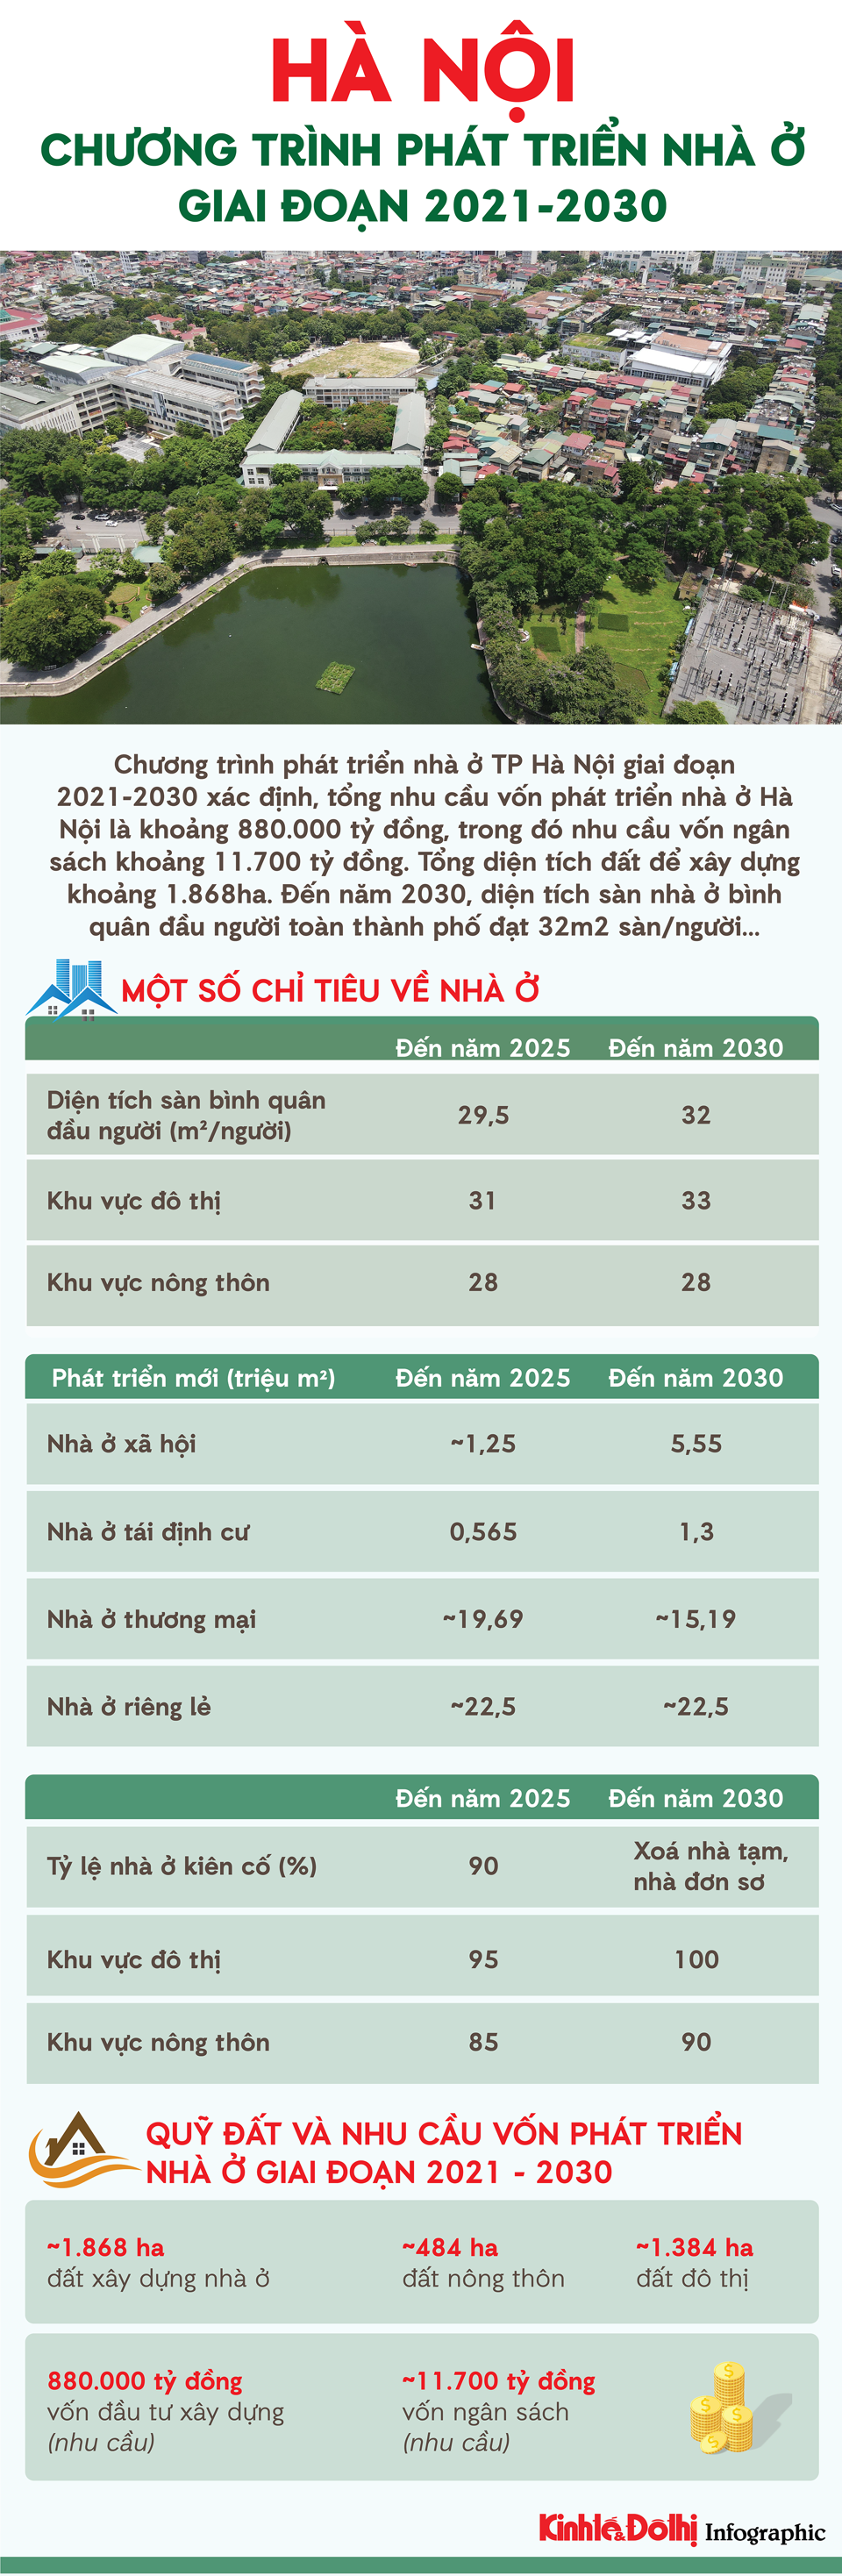 Chi tiết chương trình phát triển nhà ở tại Hà Nội giai đoạn 2021 - 2030 - Ảnh 1